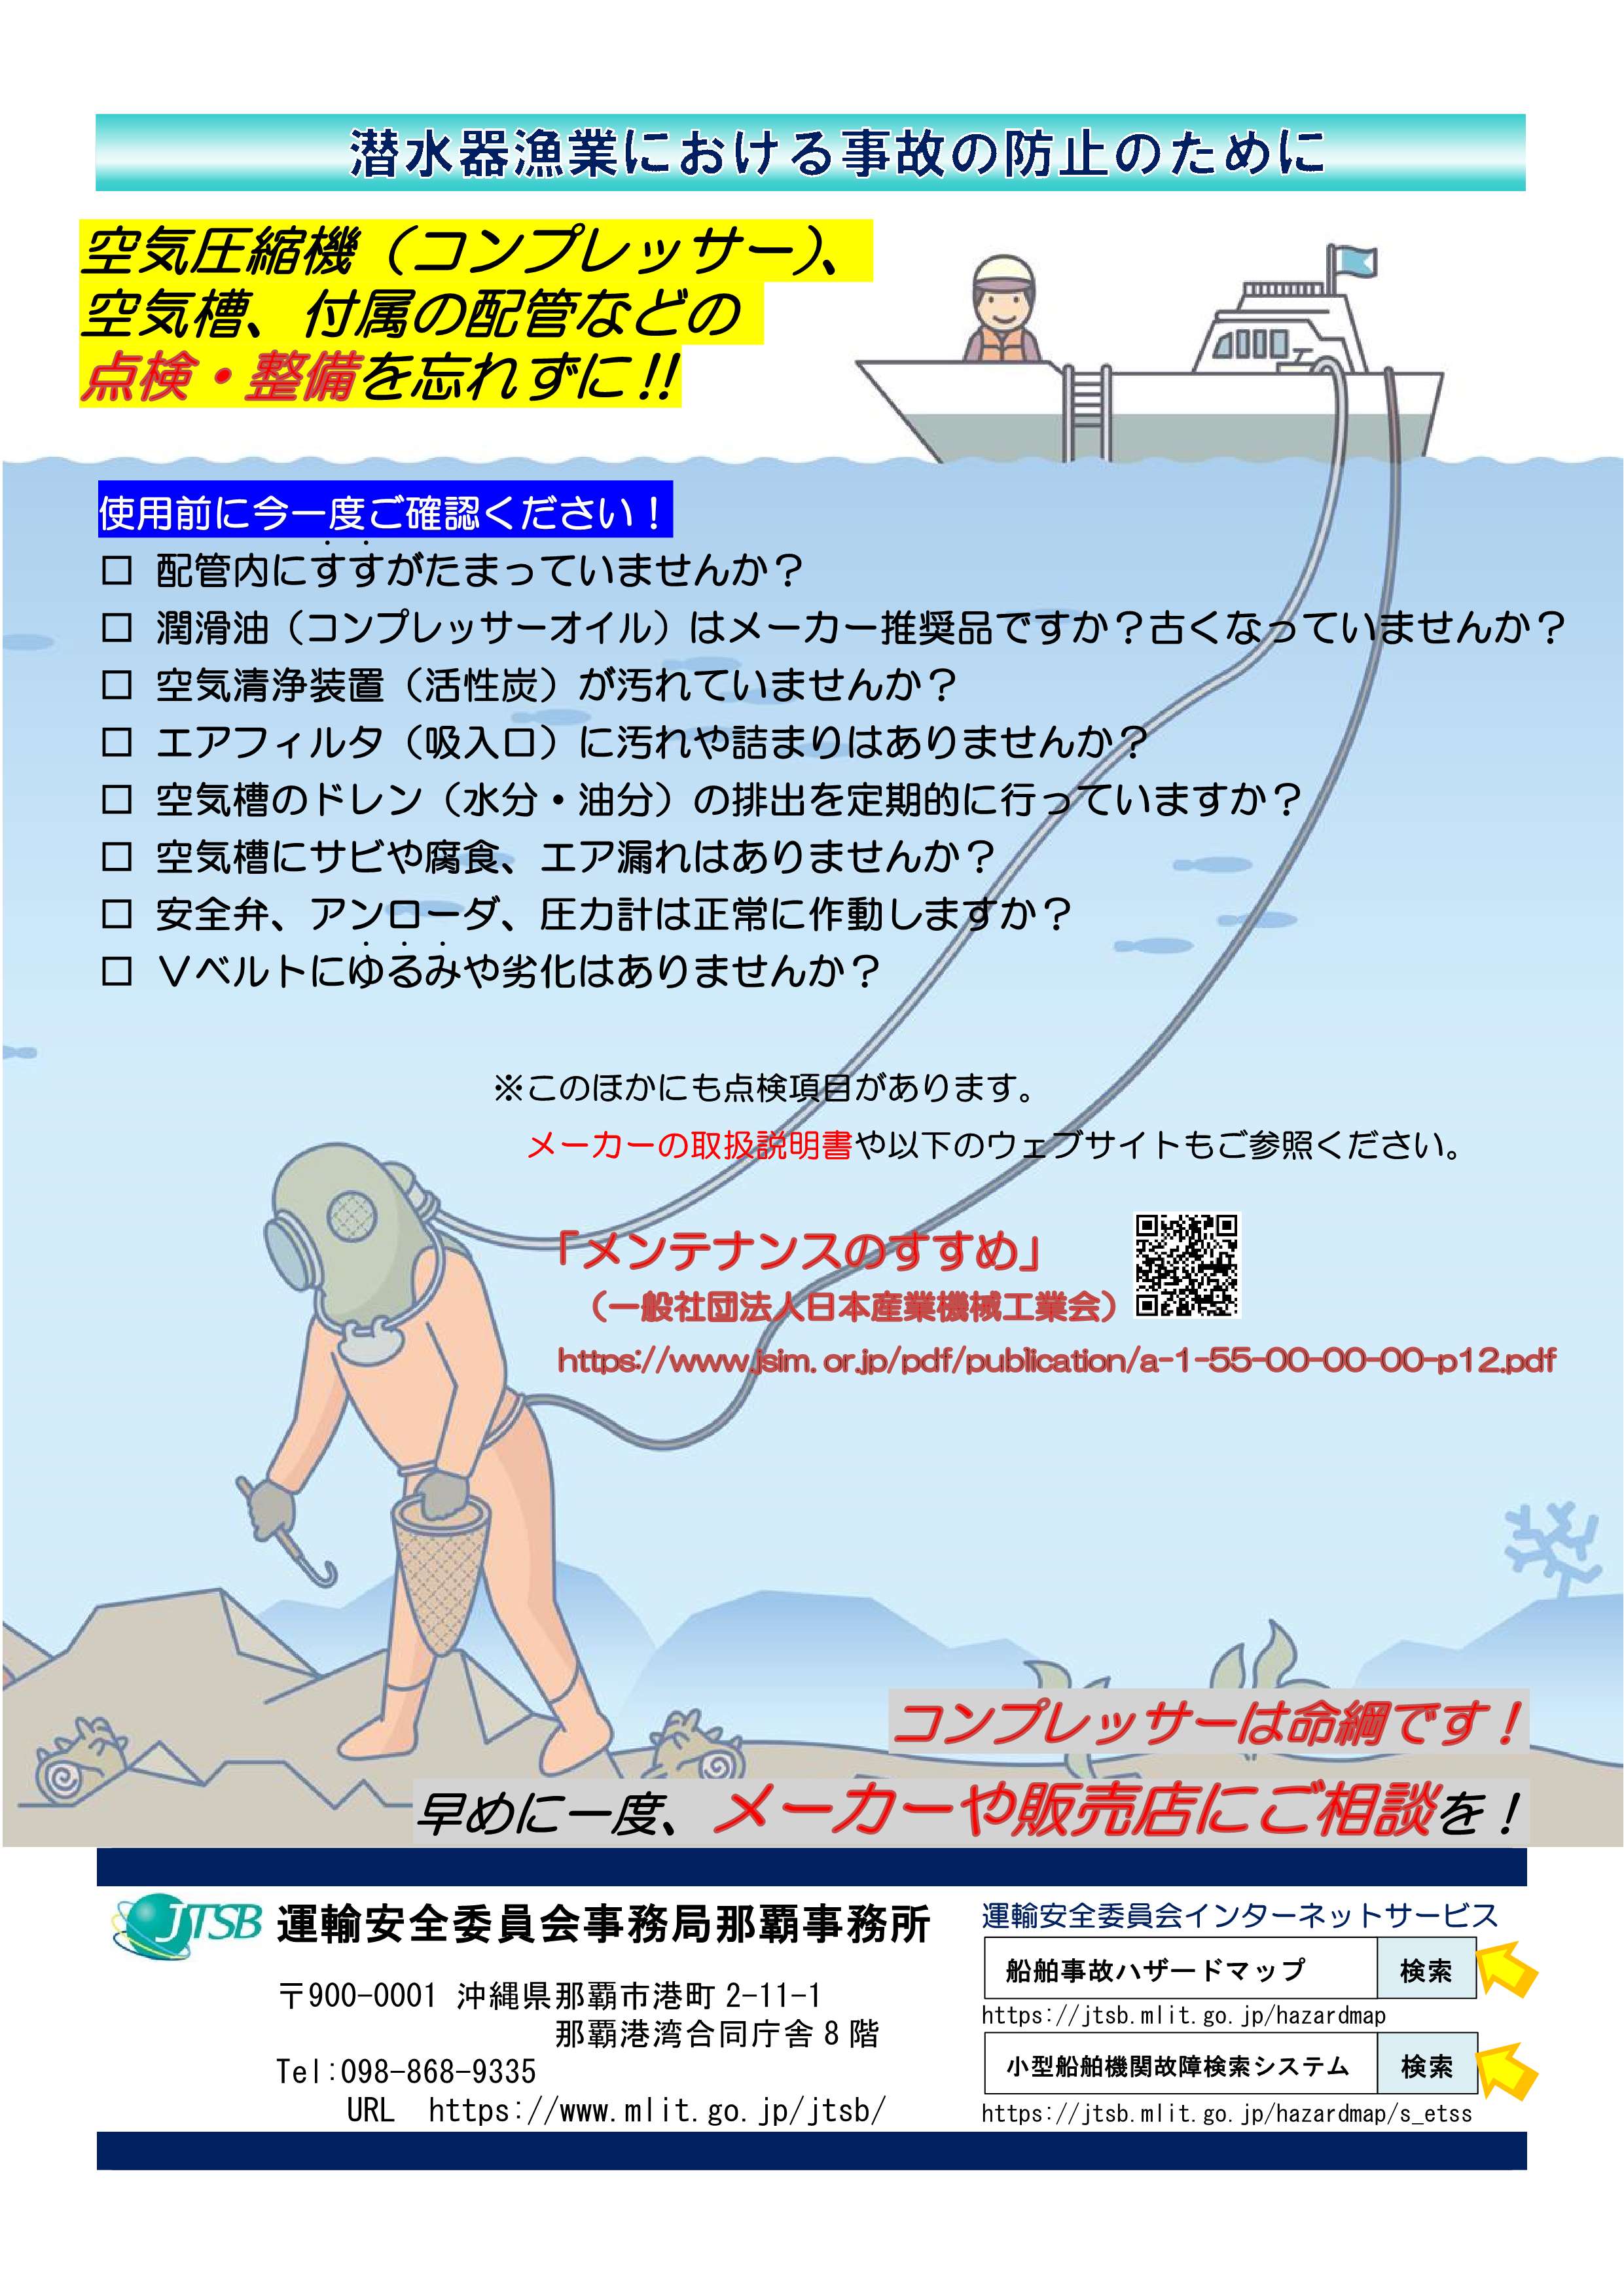 潜水器漁業における事故の防止の為に